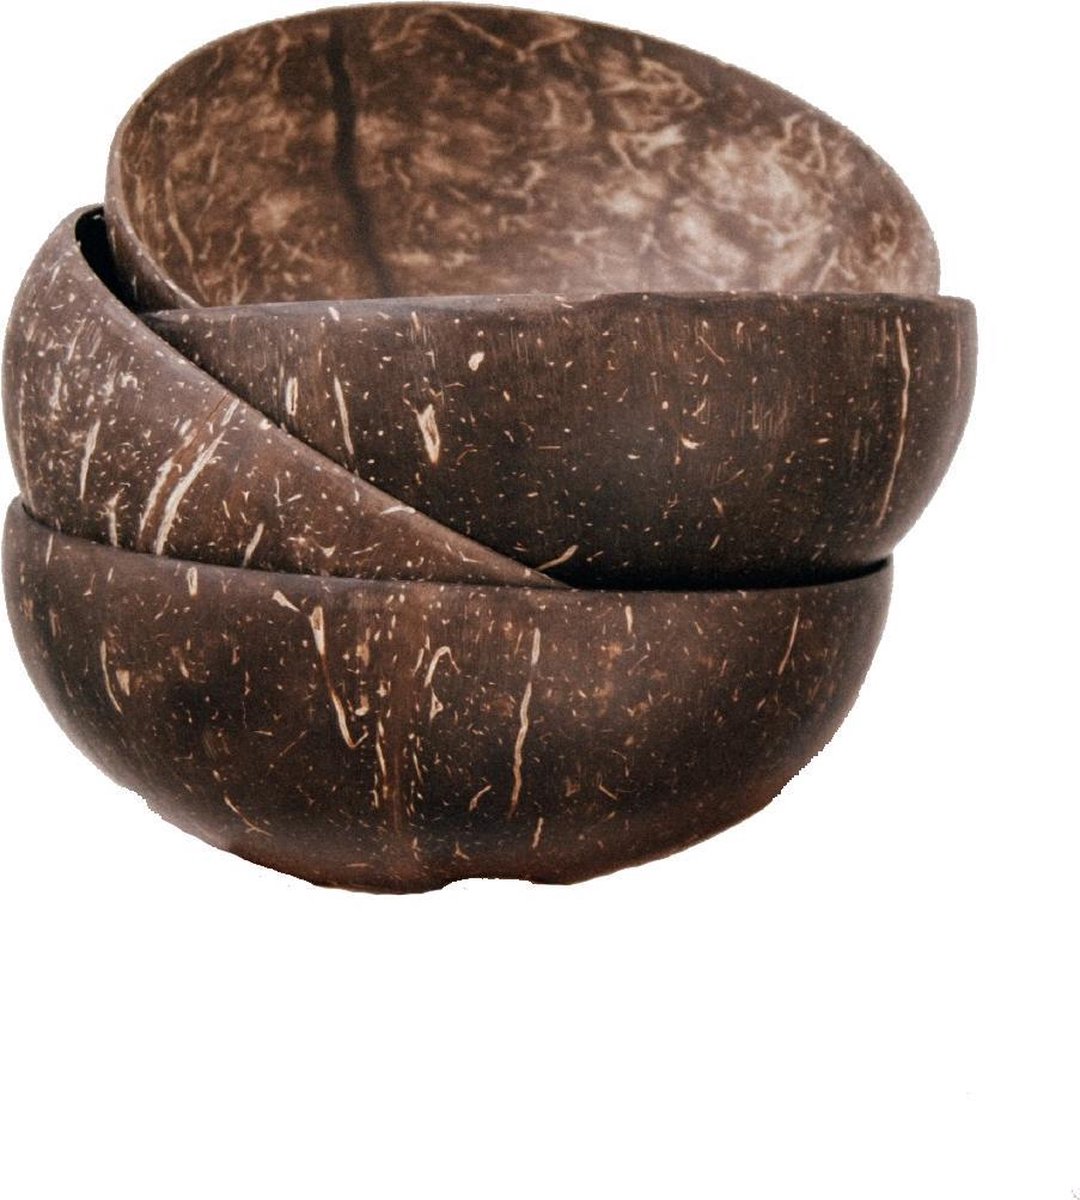 Susty | kokosnootkom | coconut bowl | handgemaakt in Viëtnam | set van 2